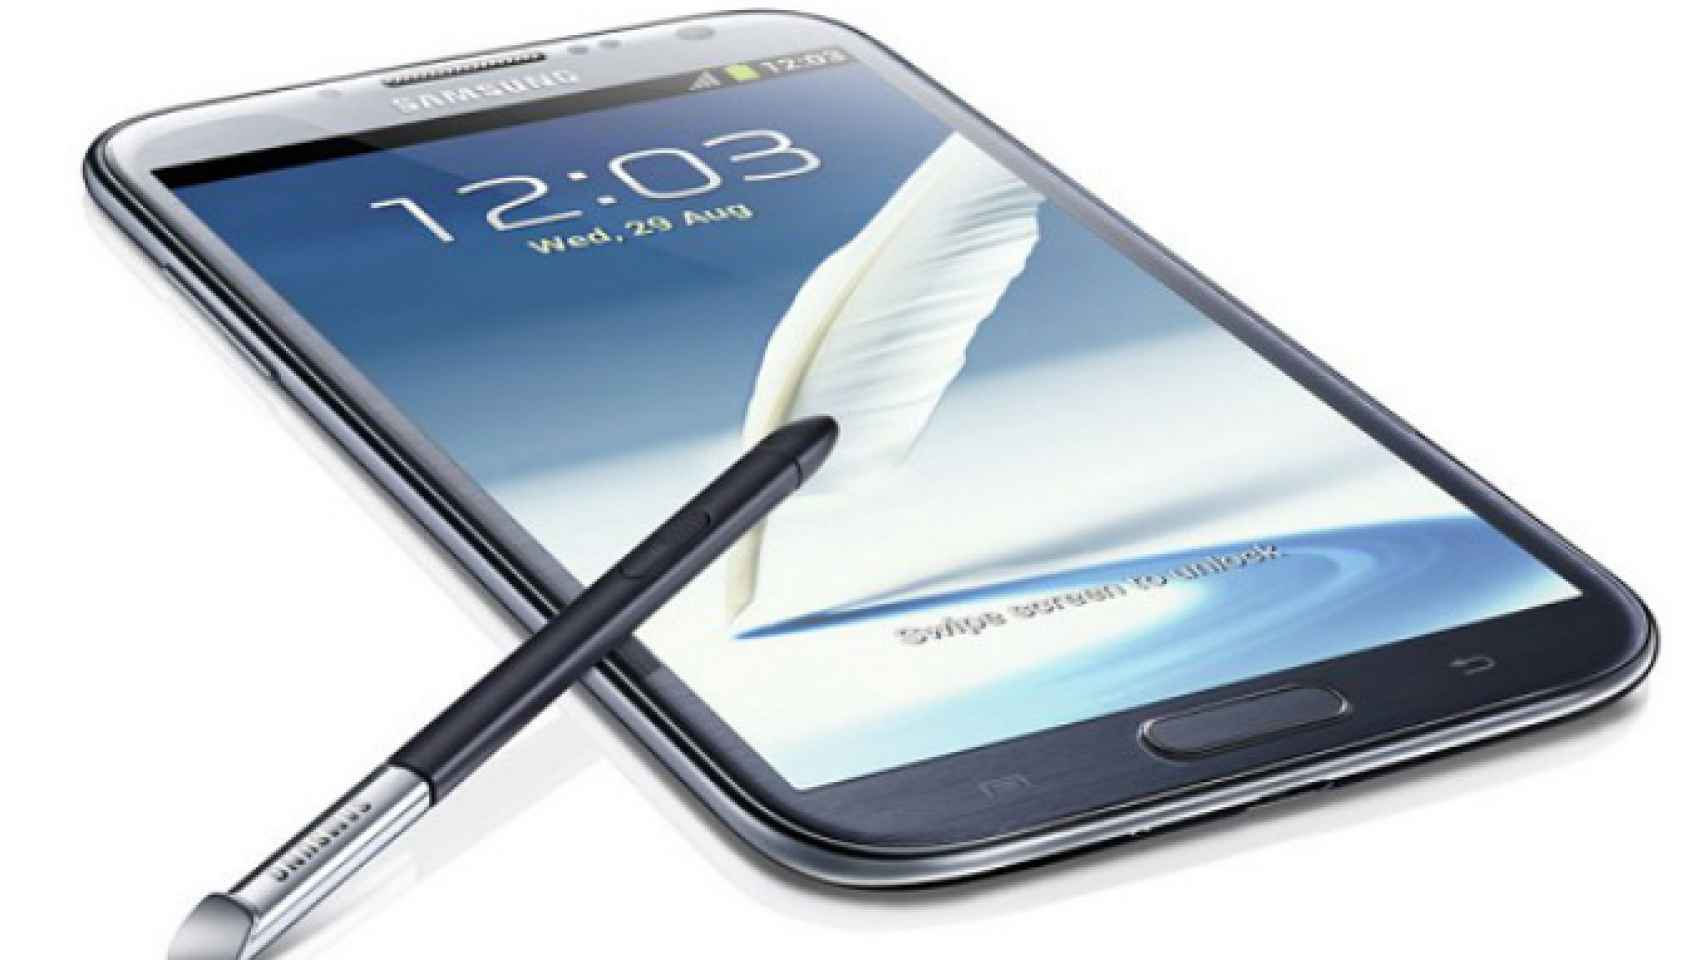 Nuevo fallo de seguridad en los Galaxy Note II, la seguridad es la asignatura pendiente de Samsung